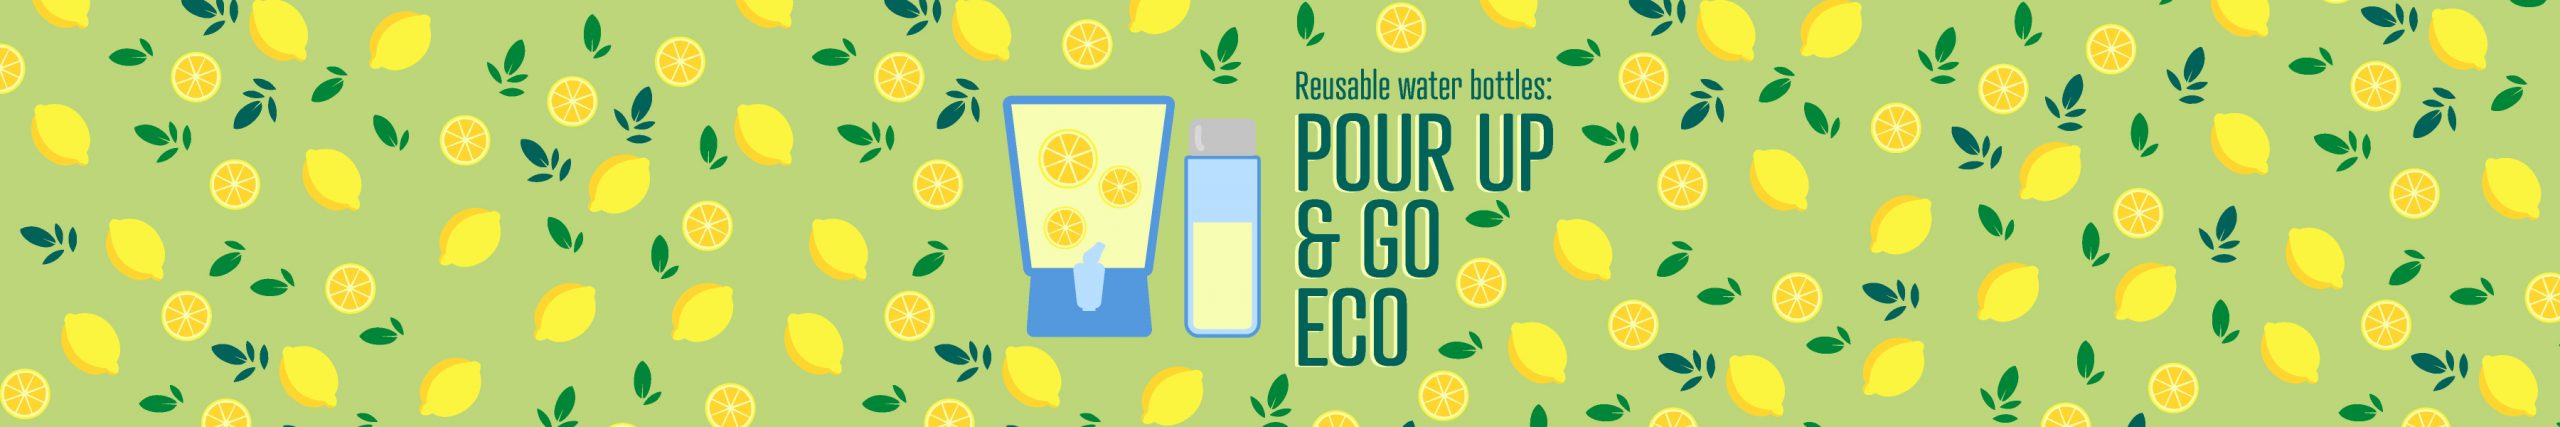 Pour Up & Go Eco!